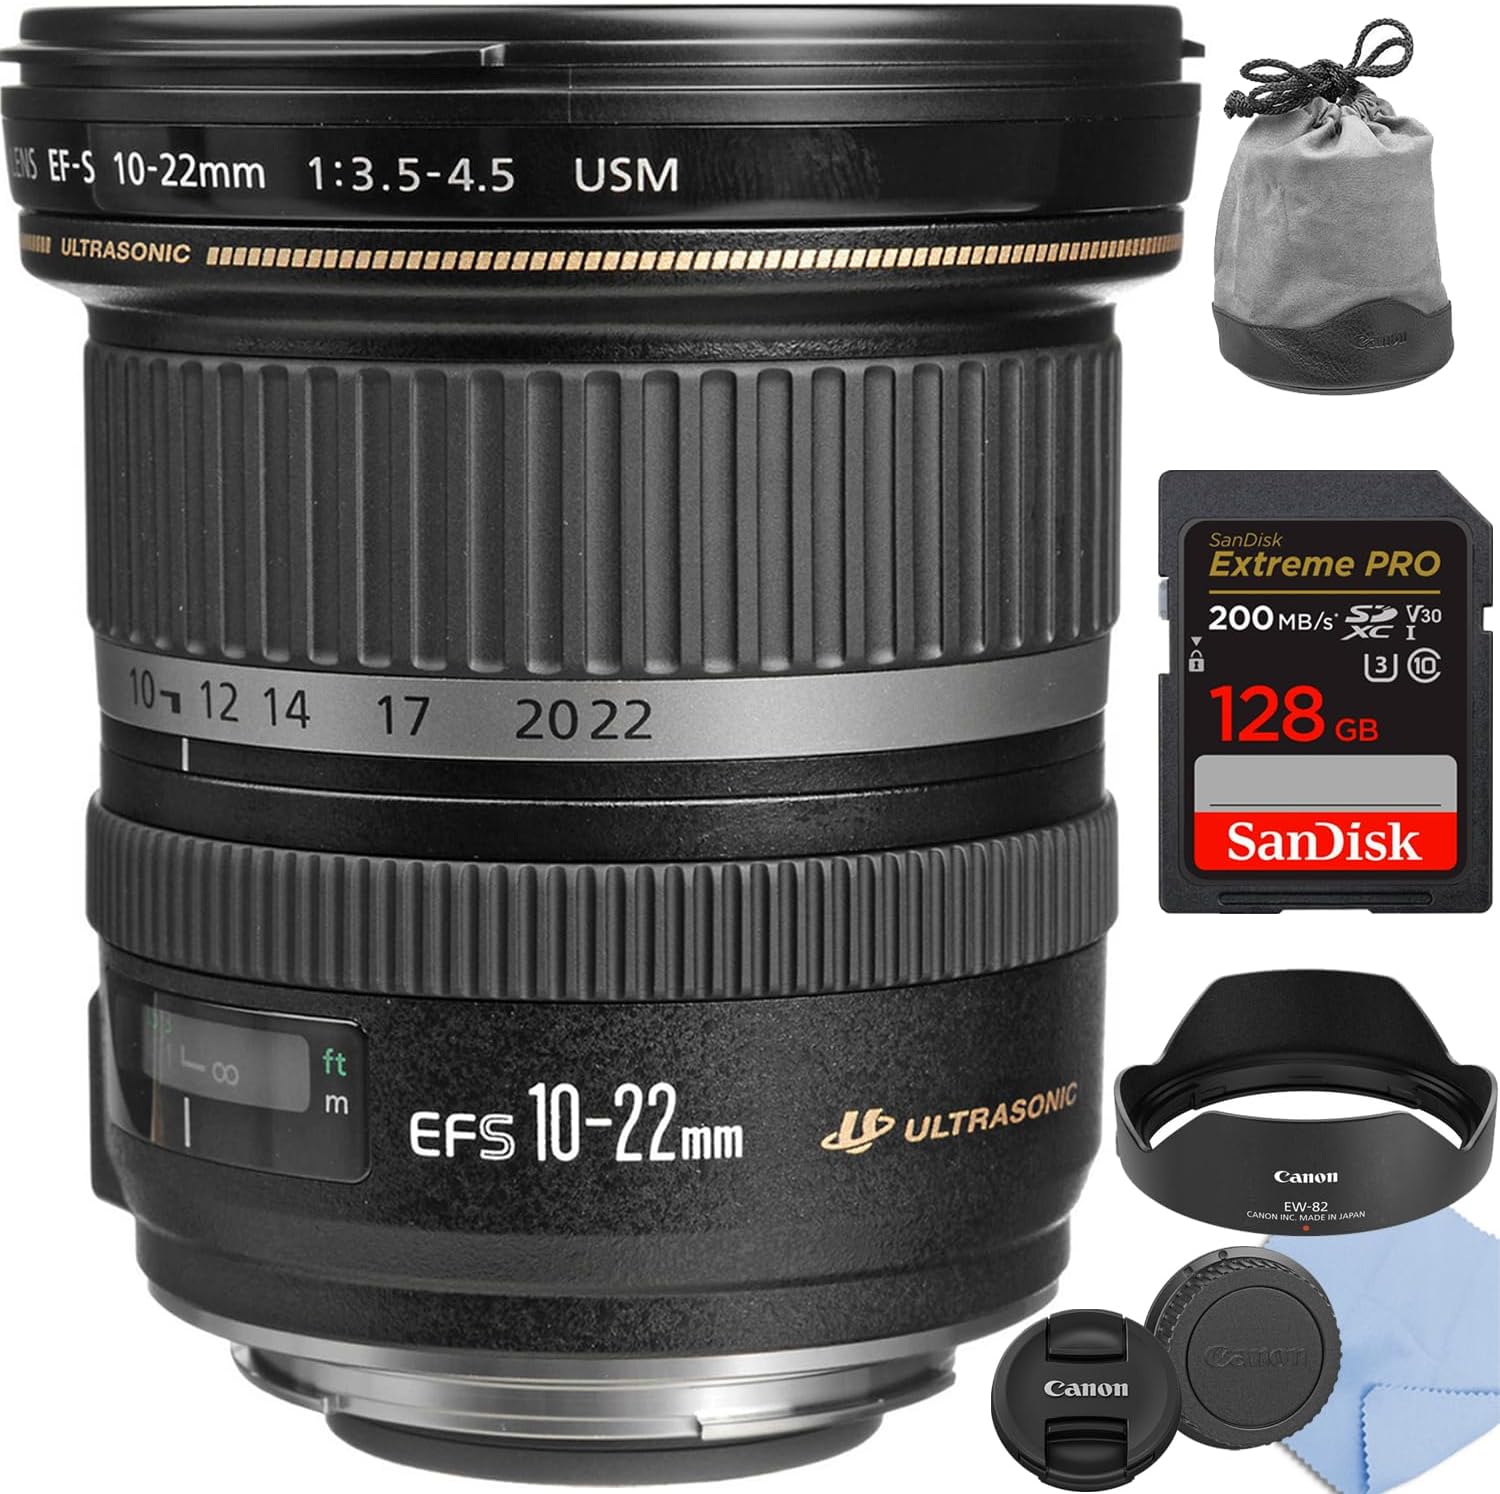 Canon EF-S 10-22mm f/3.5-4.5 USM Lens Starter Bundle